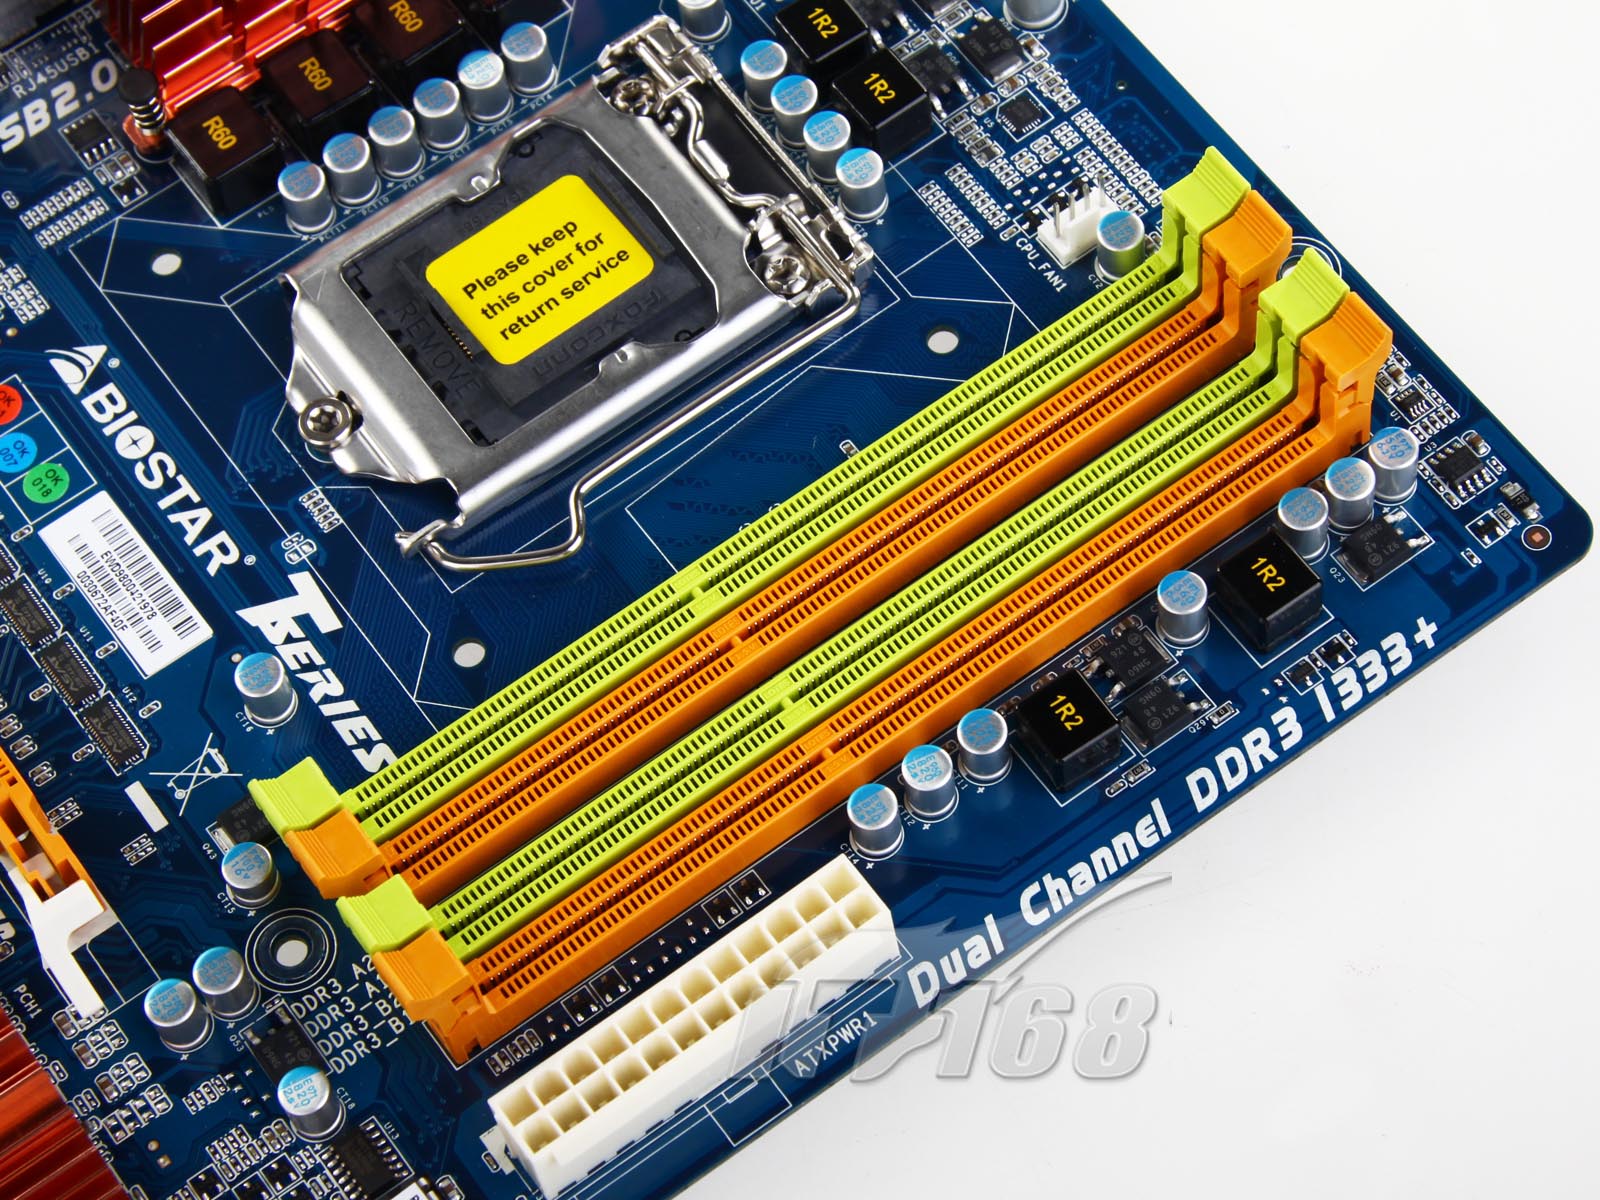 映泰H110主板与DDR3内存适配问题剖析：兼容性、性能及使用要点  第4张